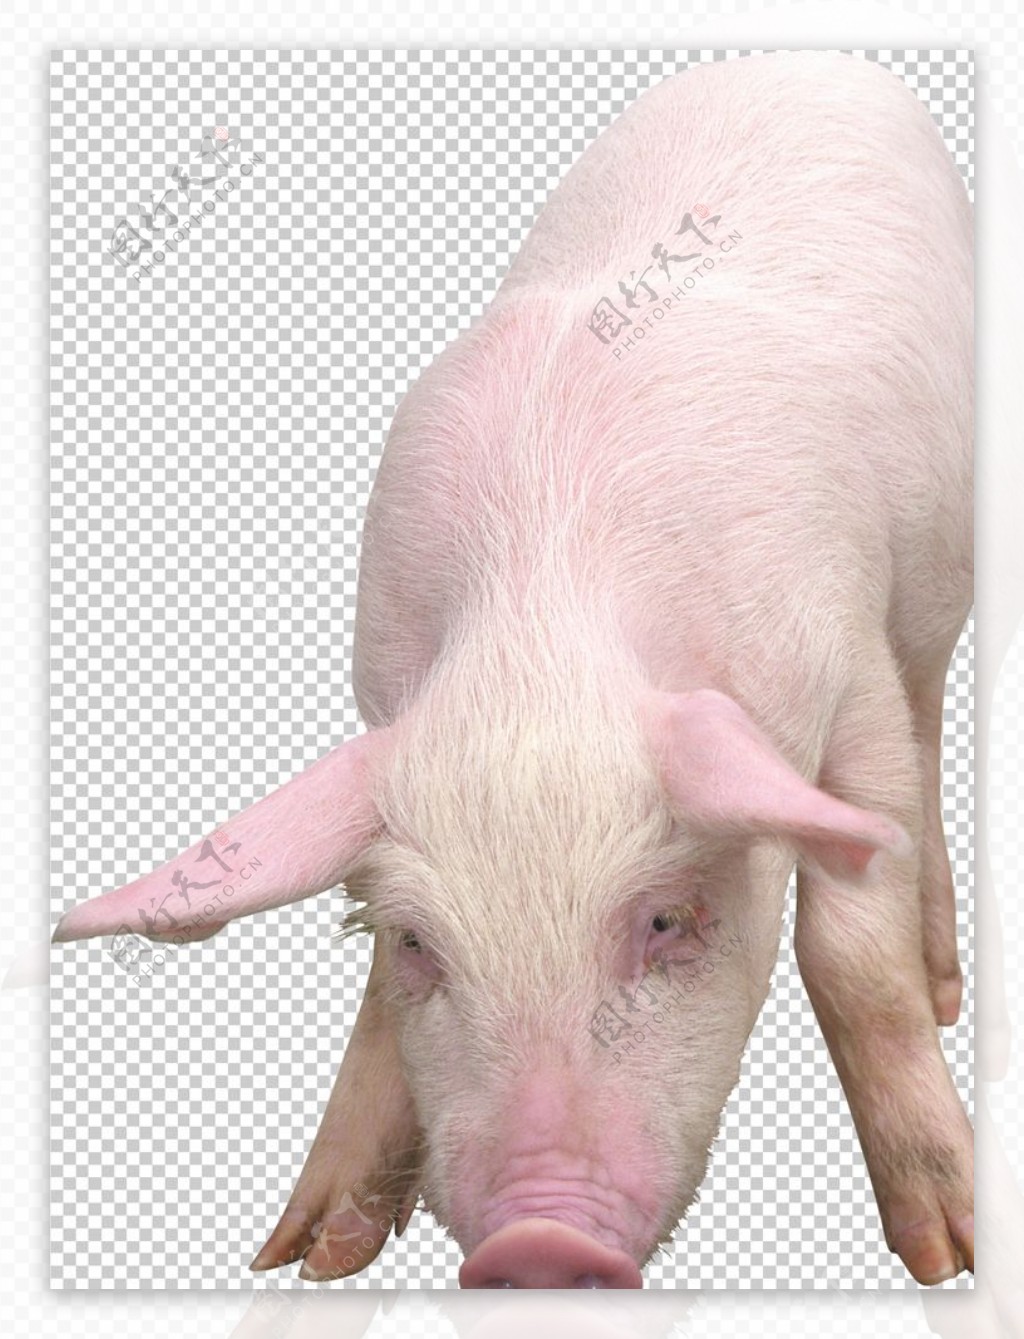 猪图片